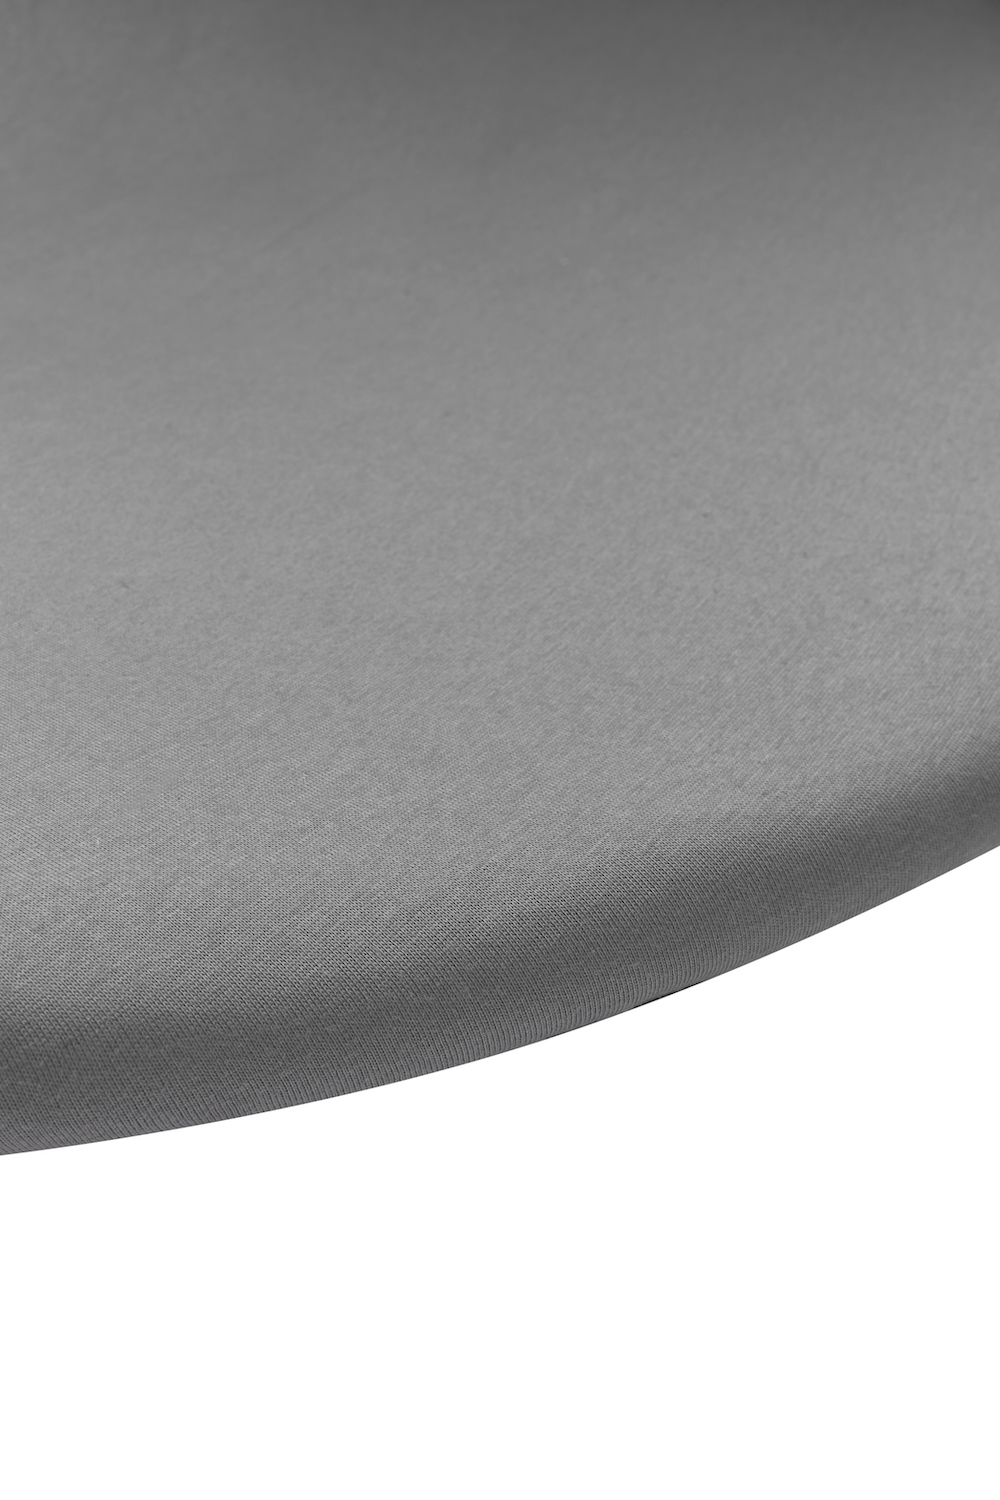 Fitted sheet playpen mattress Uni - grey - Round 90/95cm